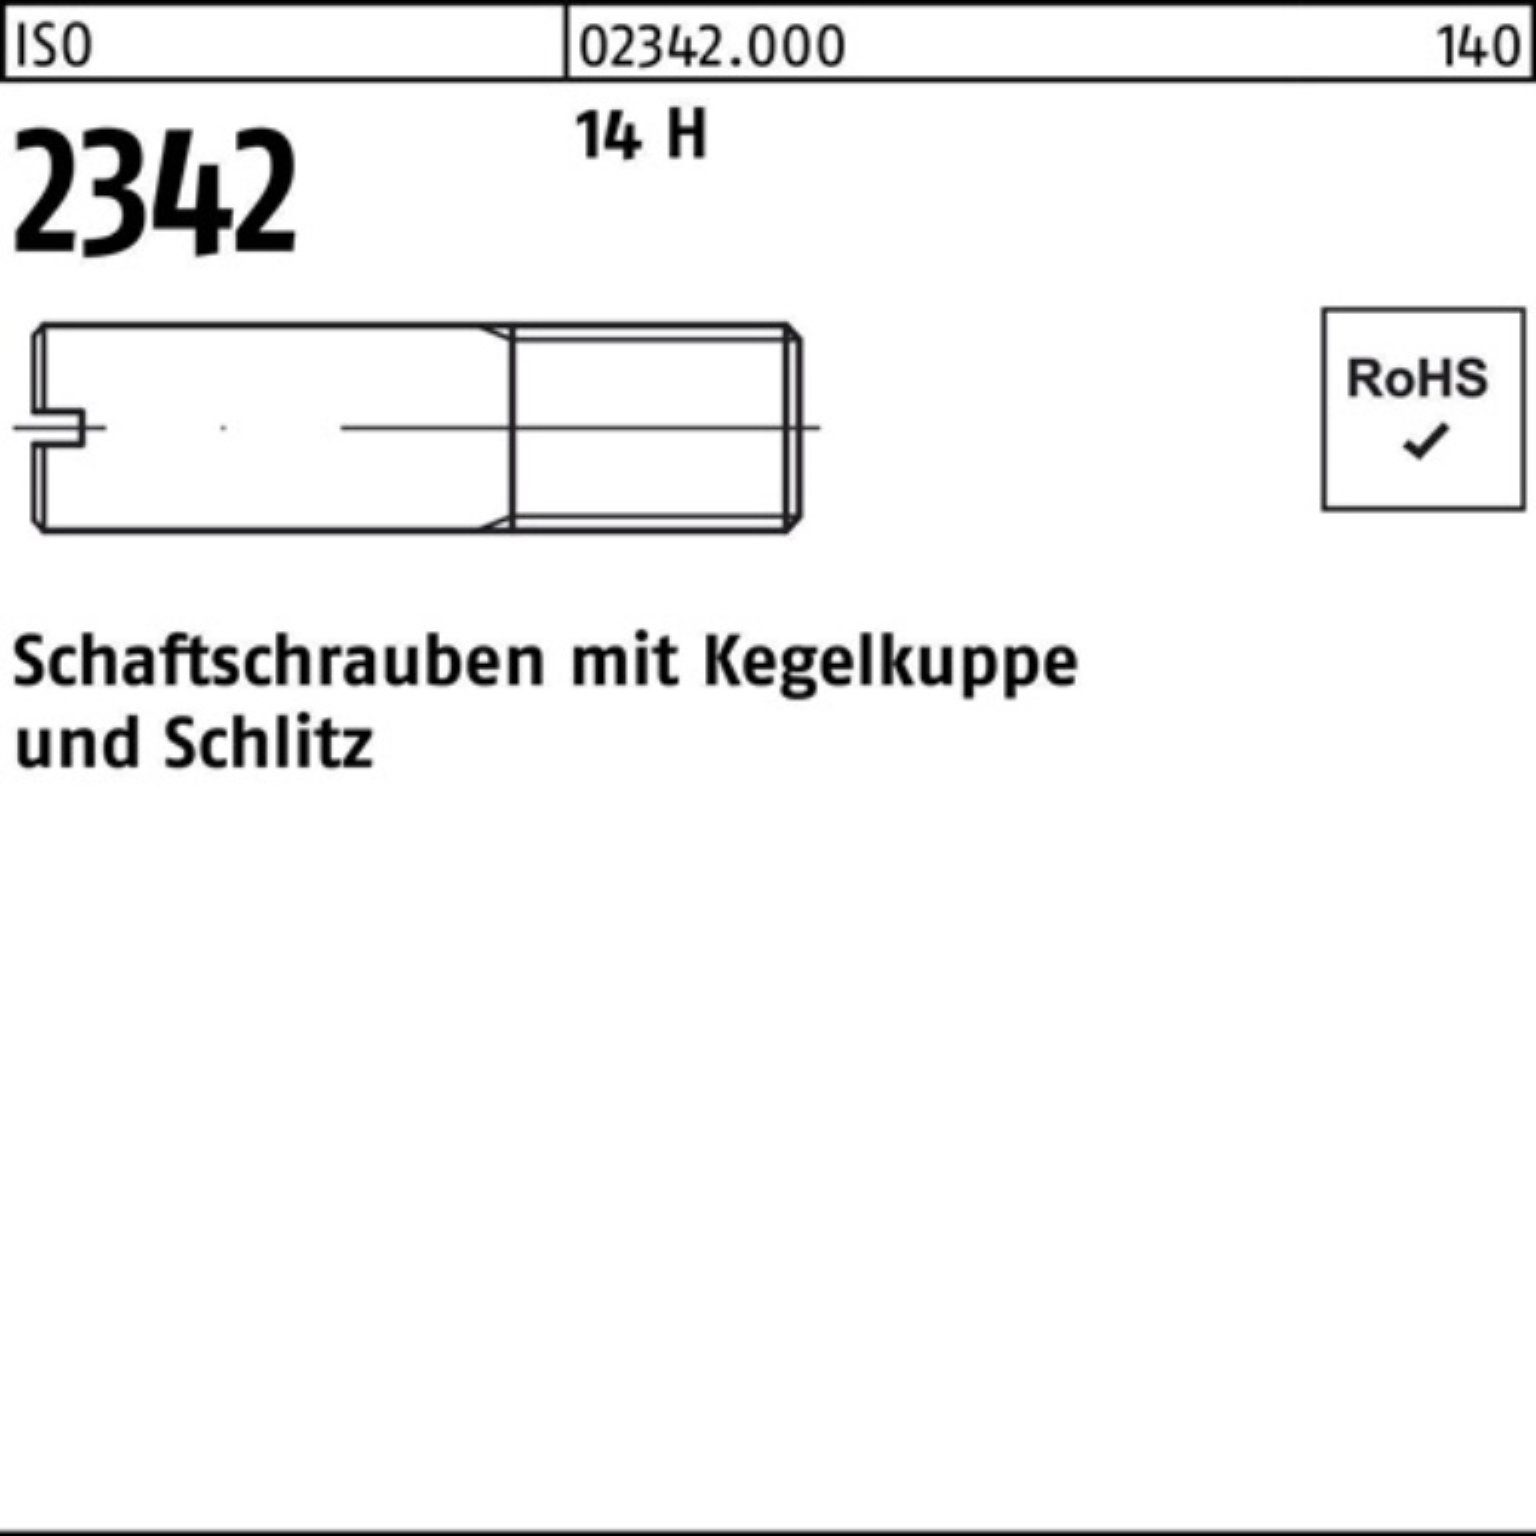 Reyher Schraube 100er Pack Schaftschraube ISO 2342 Kegelkuppe/Schlitz M4x 8 14 H 100 S